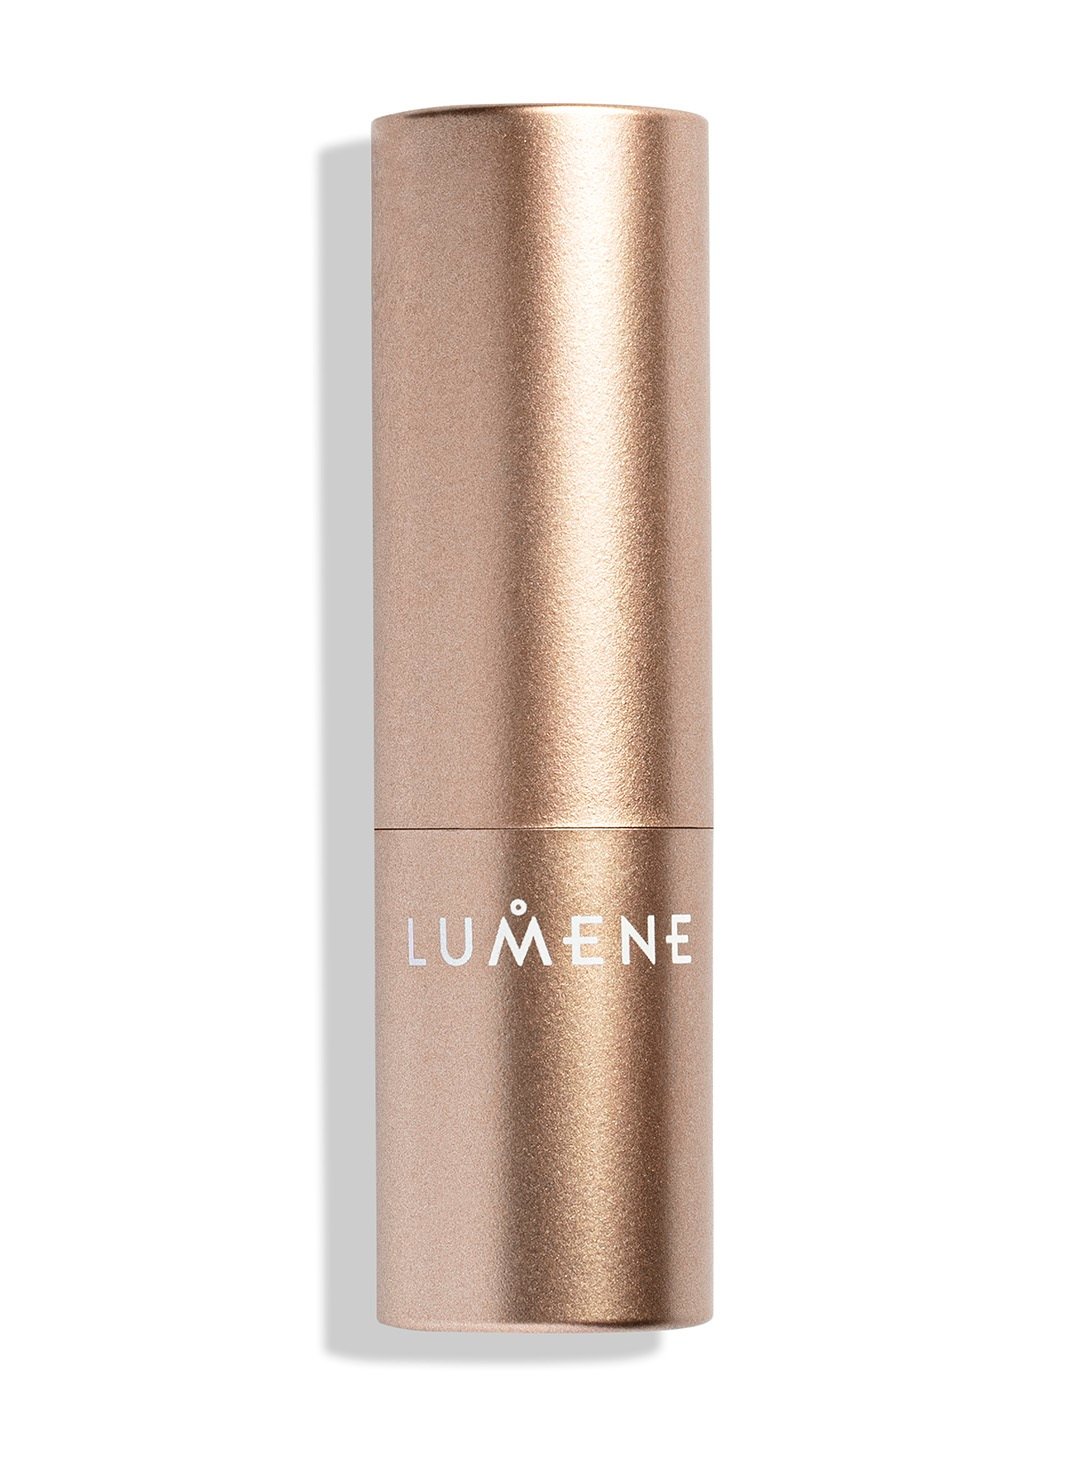 Зволожуюча помада з матовим ефектом Lumene Luminous, відтінок 103 (Twinflower), 4.7 г (8000019685936) - фото 2